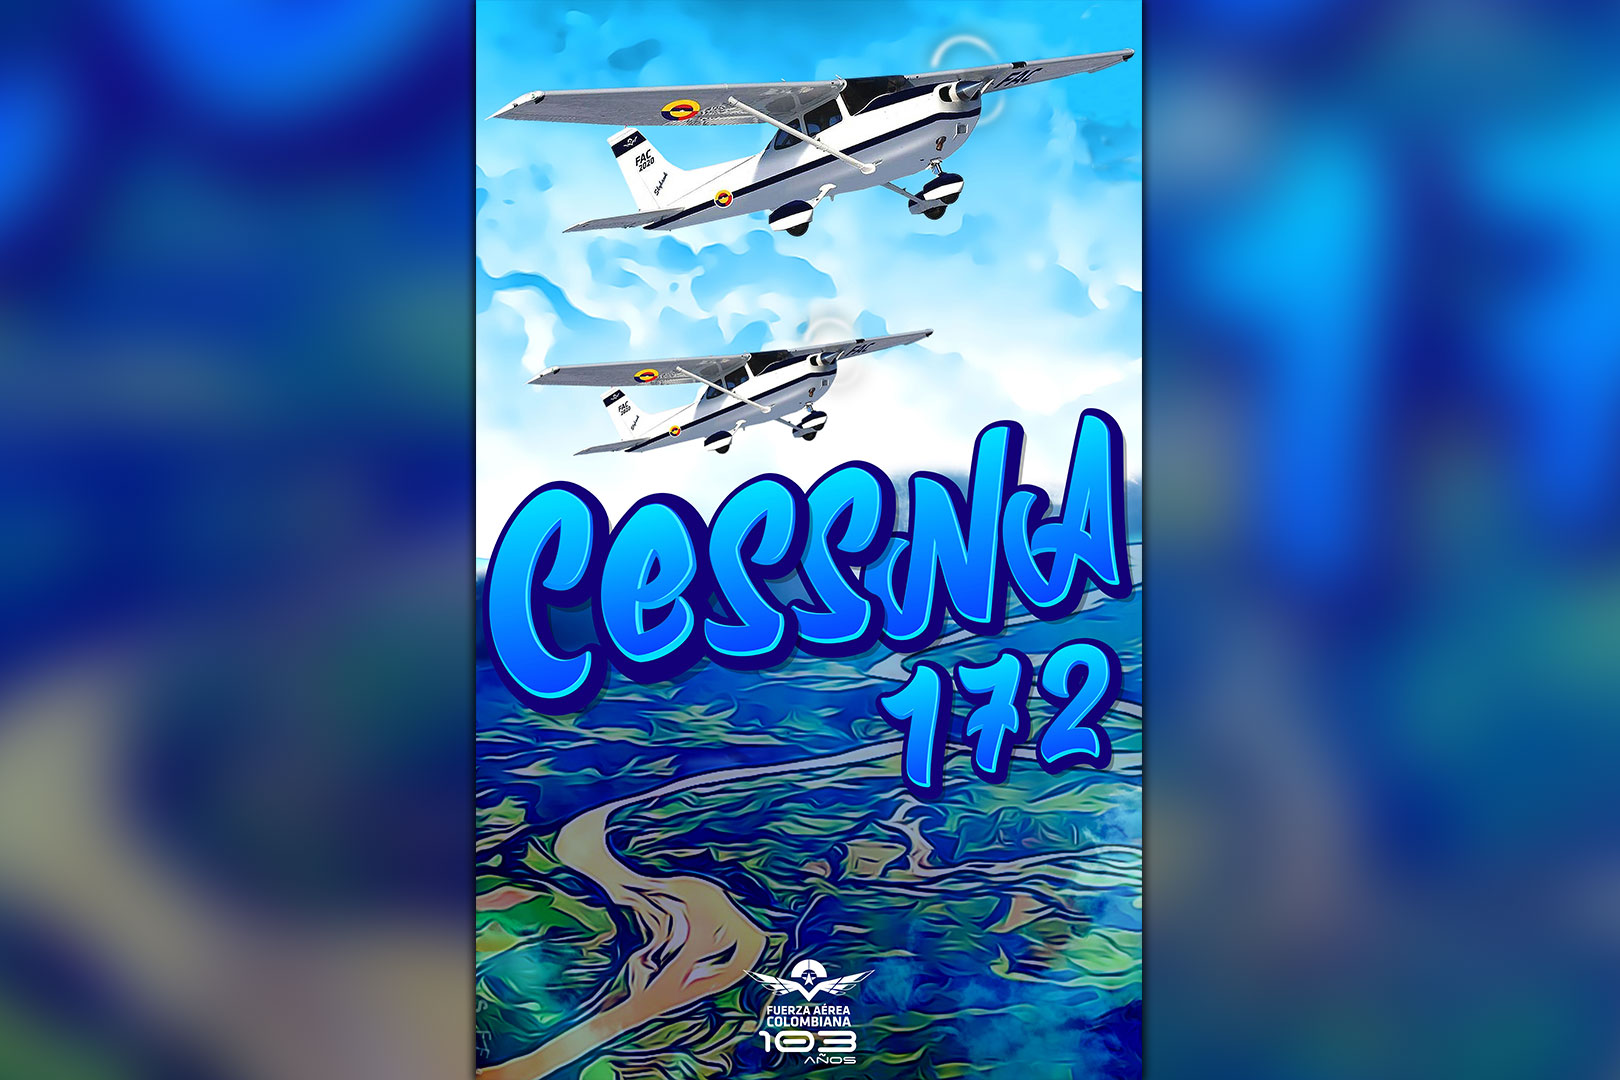 Los aviones Cessna 172 fueron seleccionados por el mando de la Fuerza Aérea Colombiana tras ser considerados ideales para la formación de los futuros pilotos, dadas sus características técnicas, alta confiabilidad y bajo costo de operación.